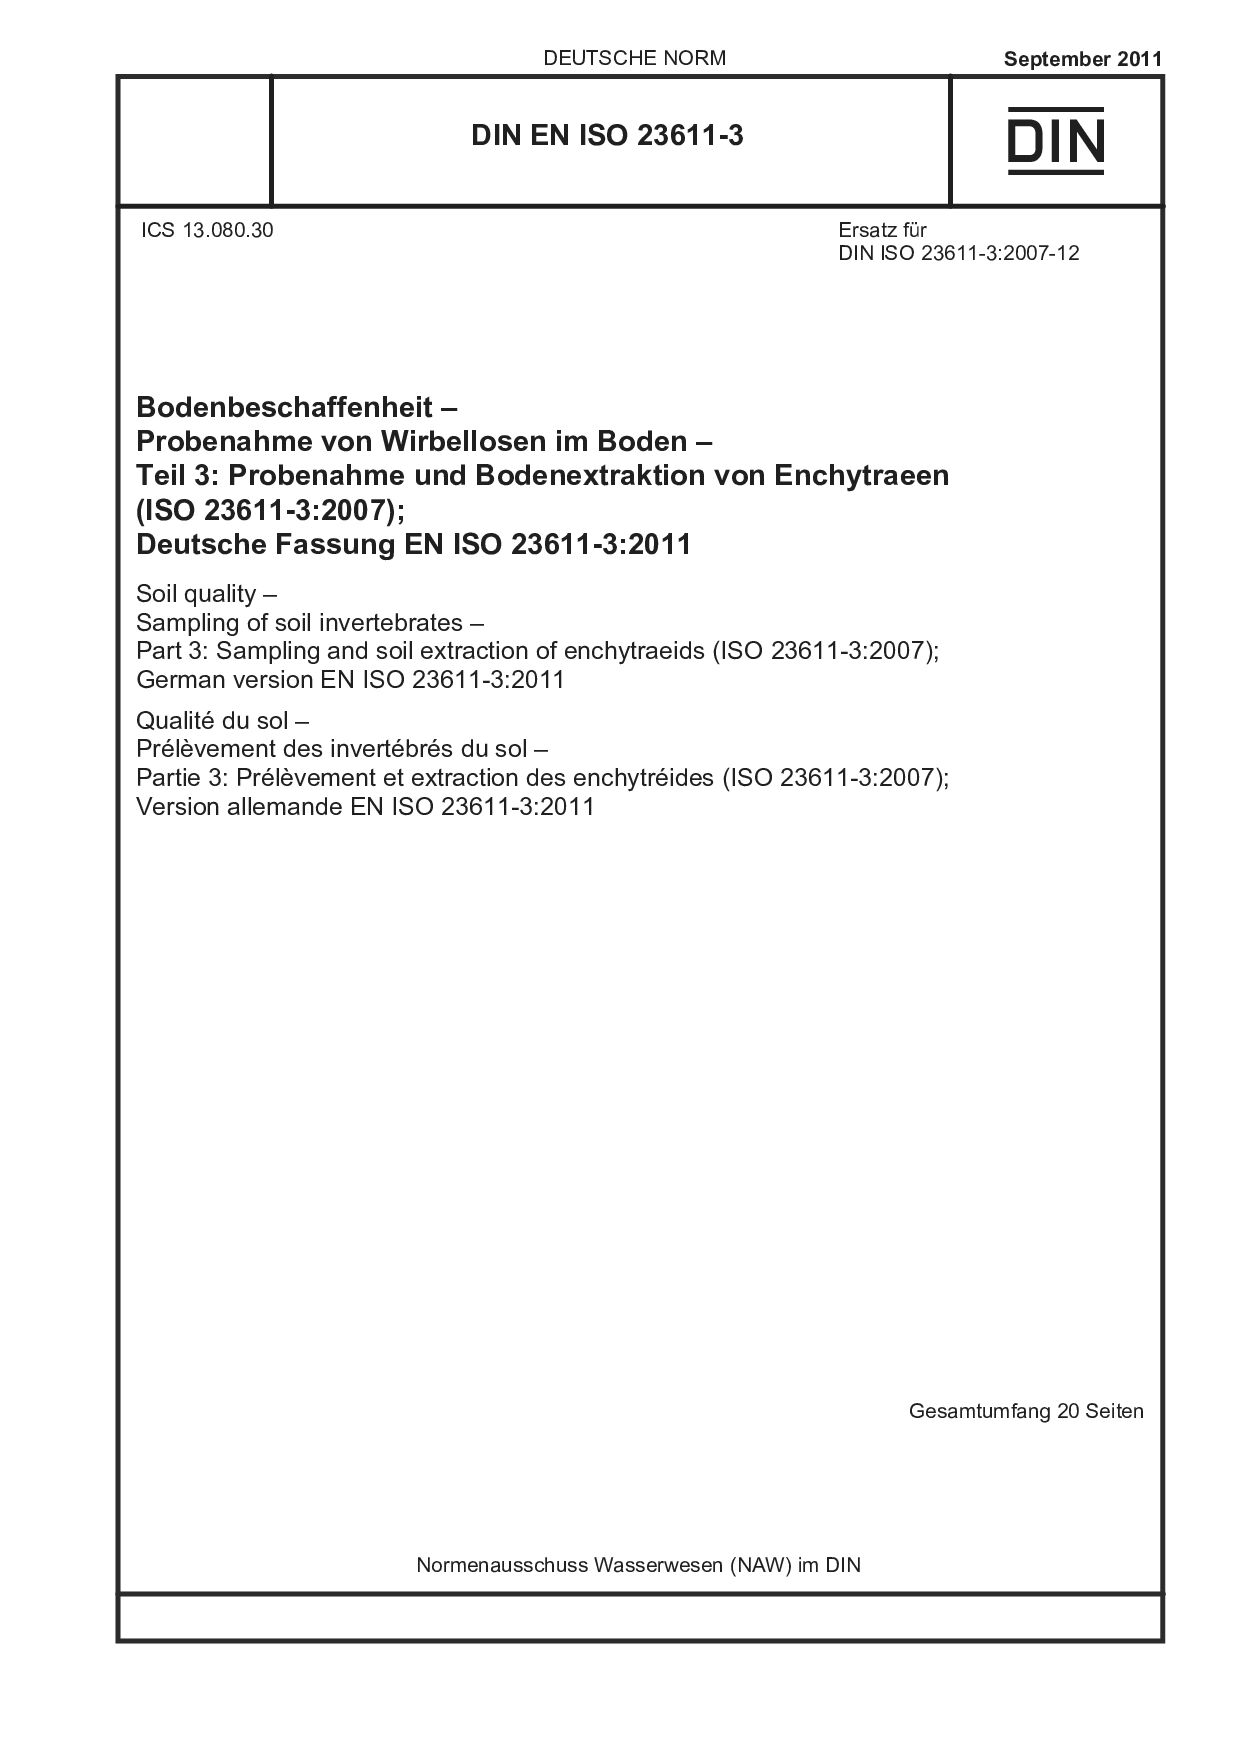 DIN EN ISO 23611-3:2011